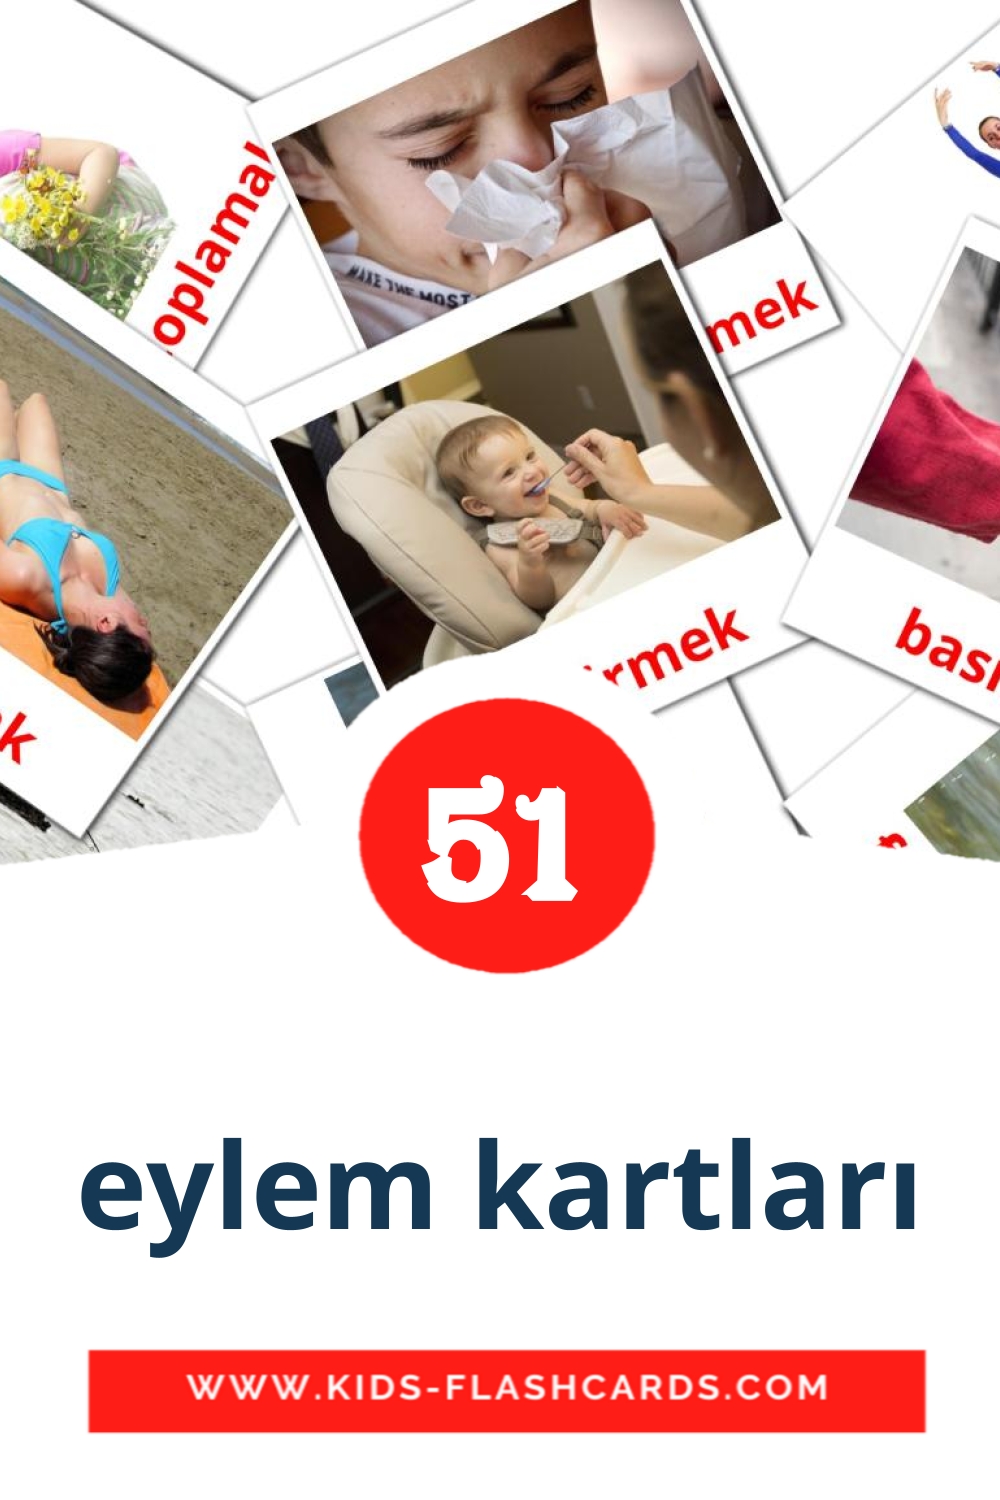 54 cartes illustrées de eylem kartları pour la maternelle en turc